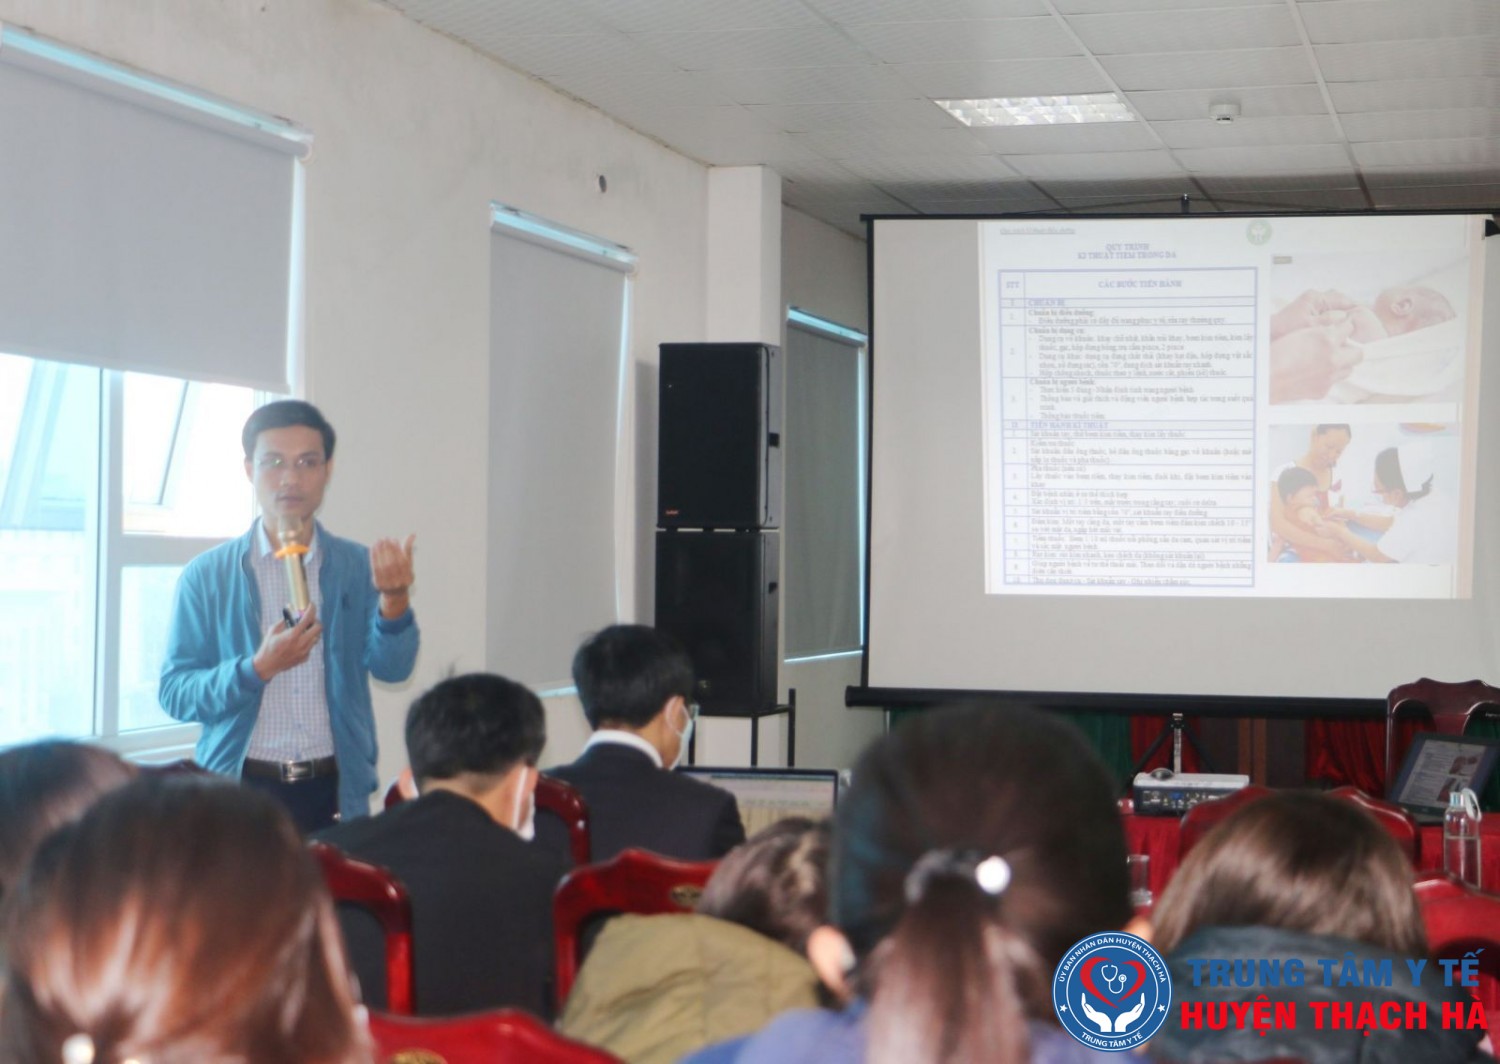 Trung tâm Kiểm soát bệnh tật (CDC) Hà Tĩnh tổ chức hội nghị triển khai tiêm vắc xin BCG phòng Lao trong bệnh viện cho các Trung tâm y tế; Bệnh viện đa khoa toàn tỉnh